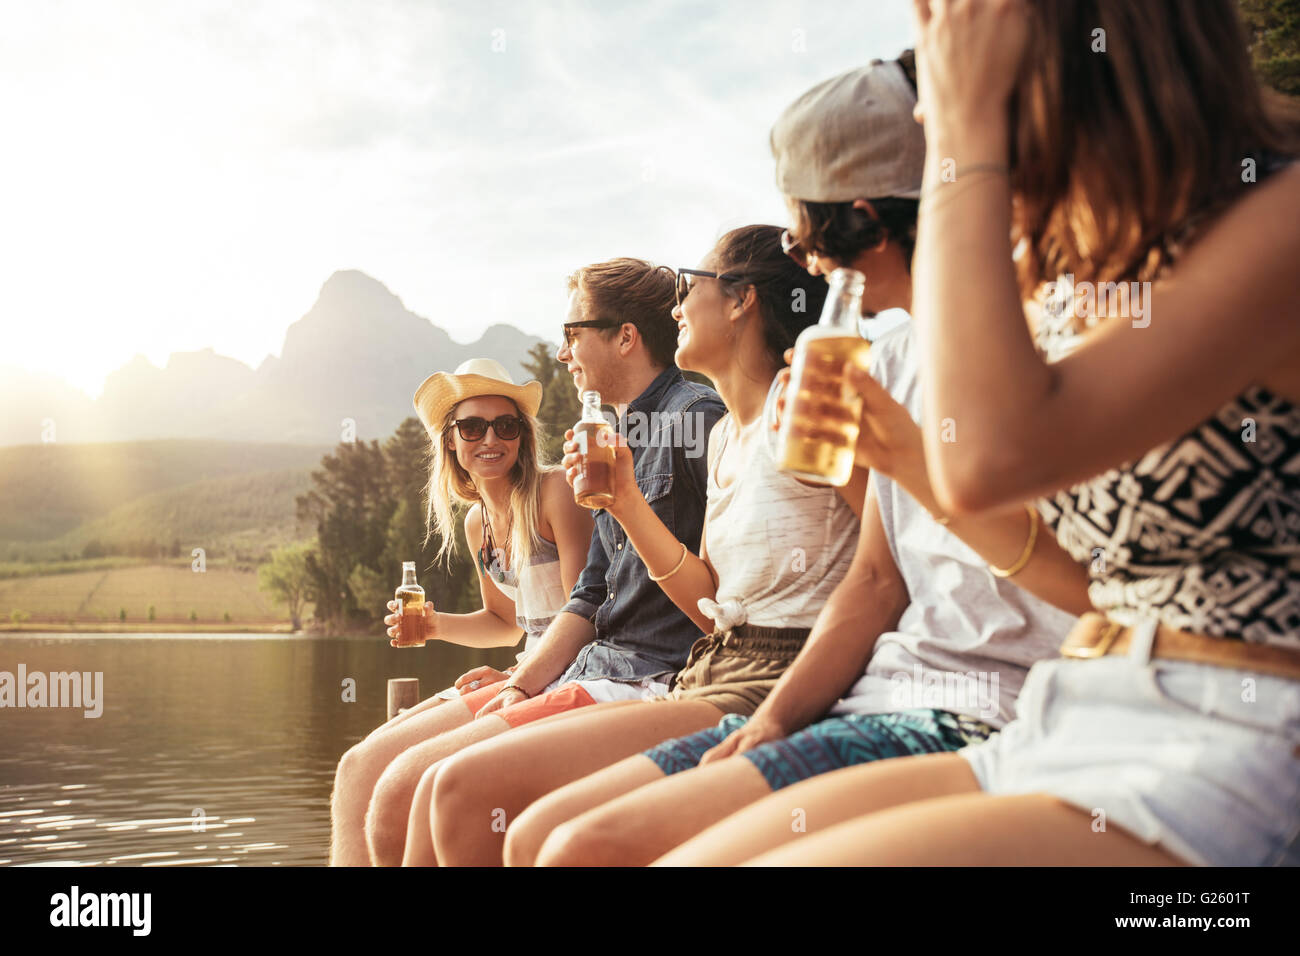 Porträt der jungen Männer und Frauen sitzen an einem Anlegesteg mit Bier. Junge Männer und Frauen, die einen Tag am See zu genießen. Stockfoto